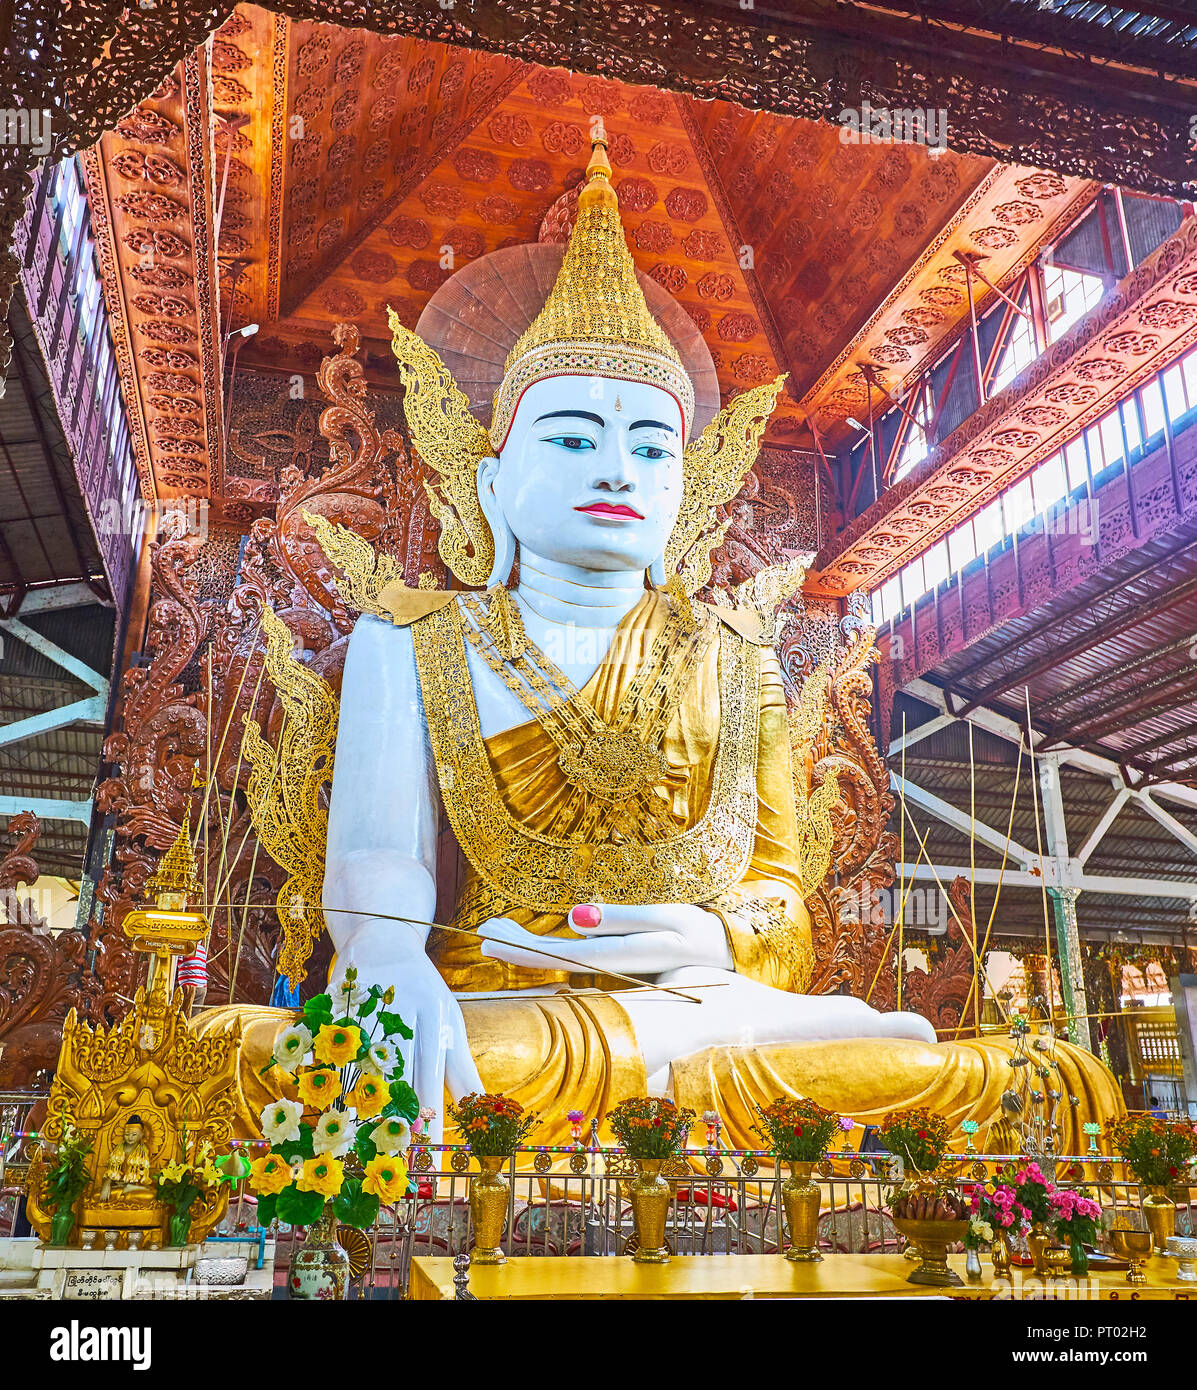 Nga htat gyi pagoda hi-res stock photography and images - Alamy